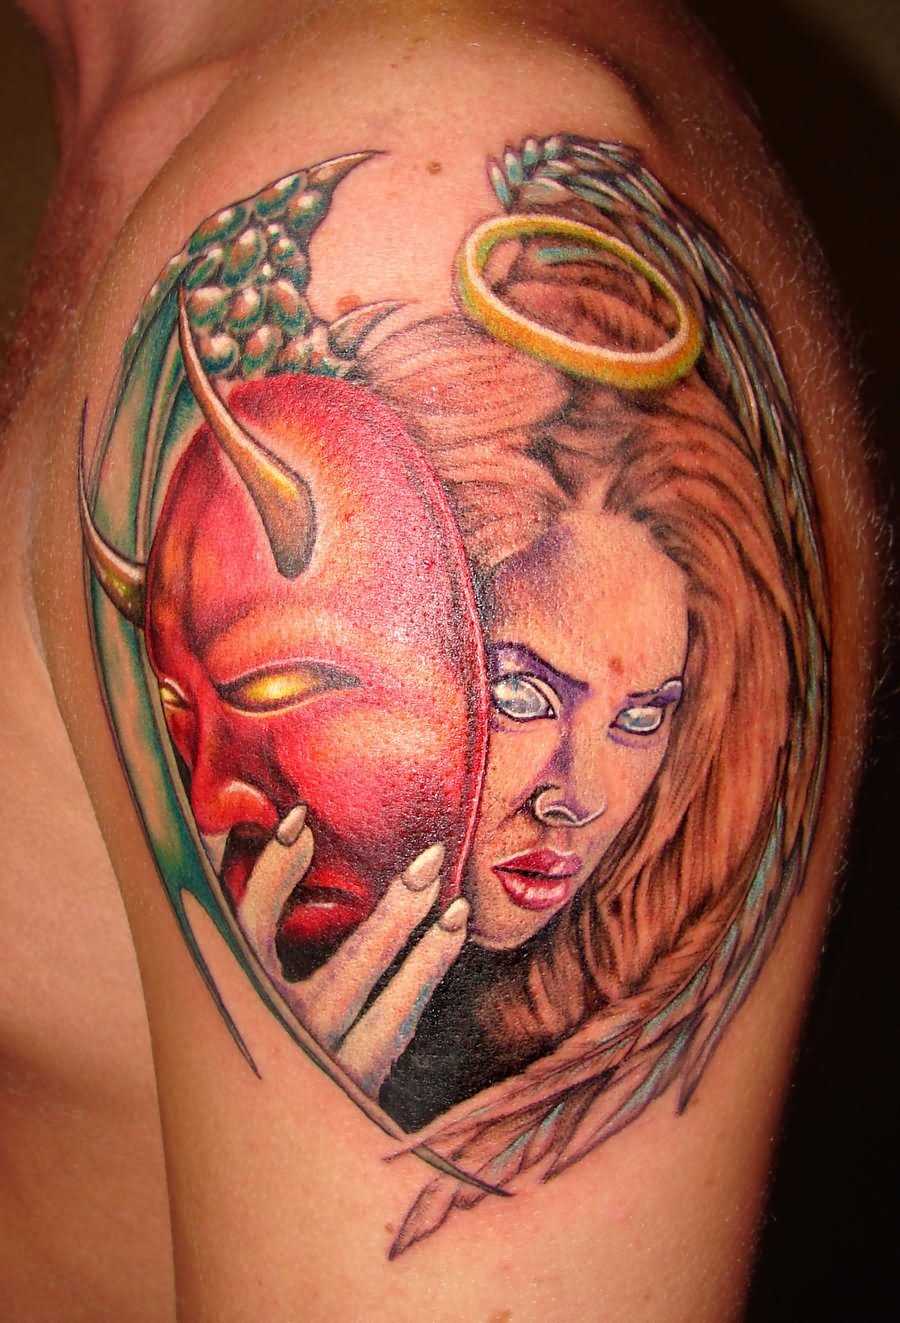 A tatuagem do cara no ombro - é uma menina com uma máscara, o anel e as asas